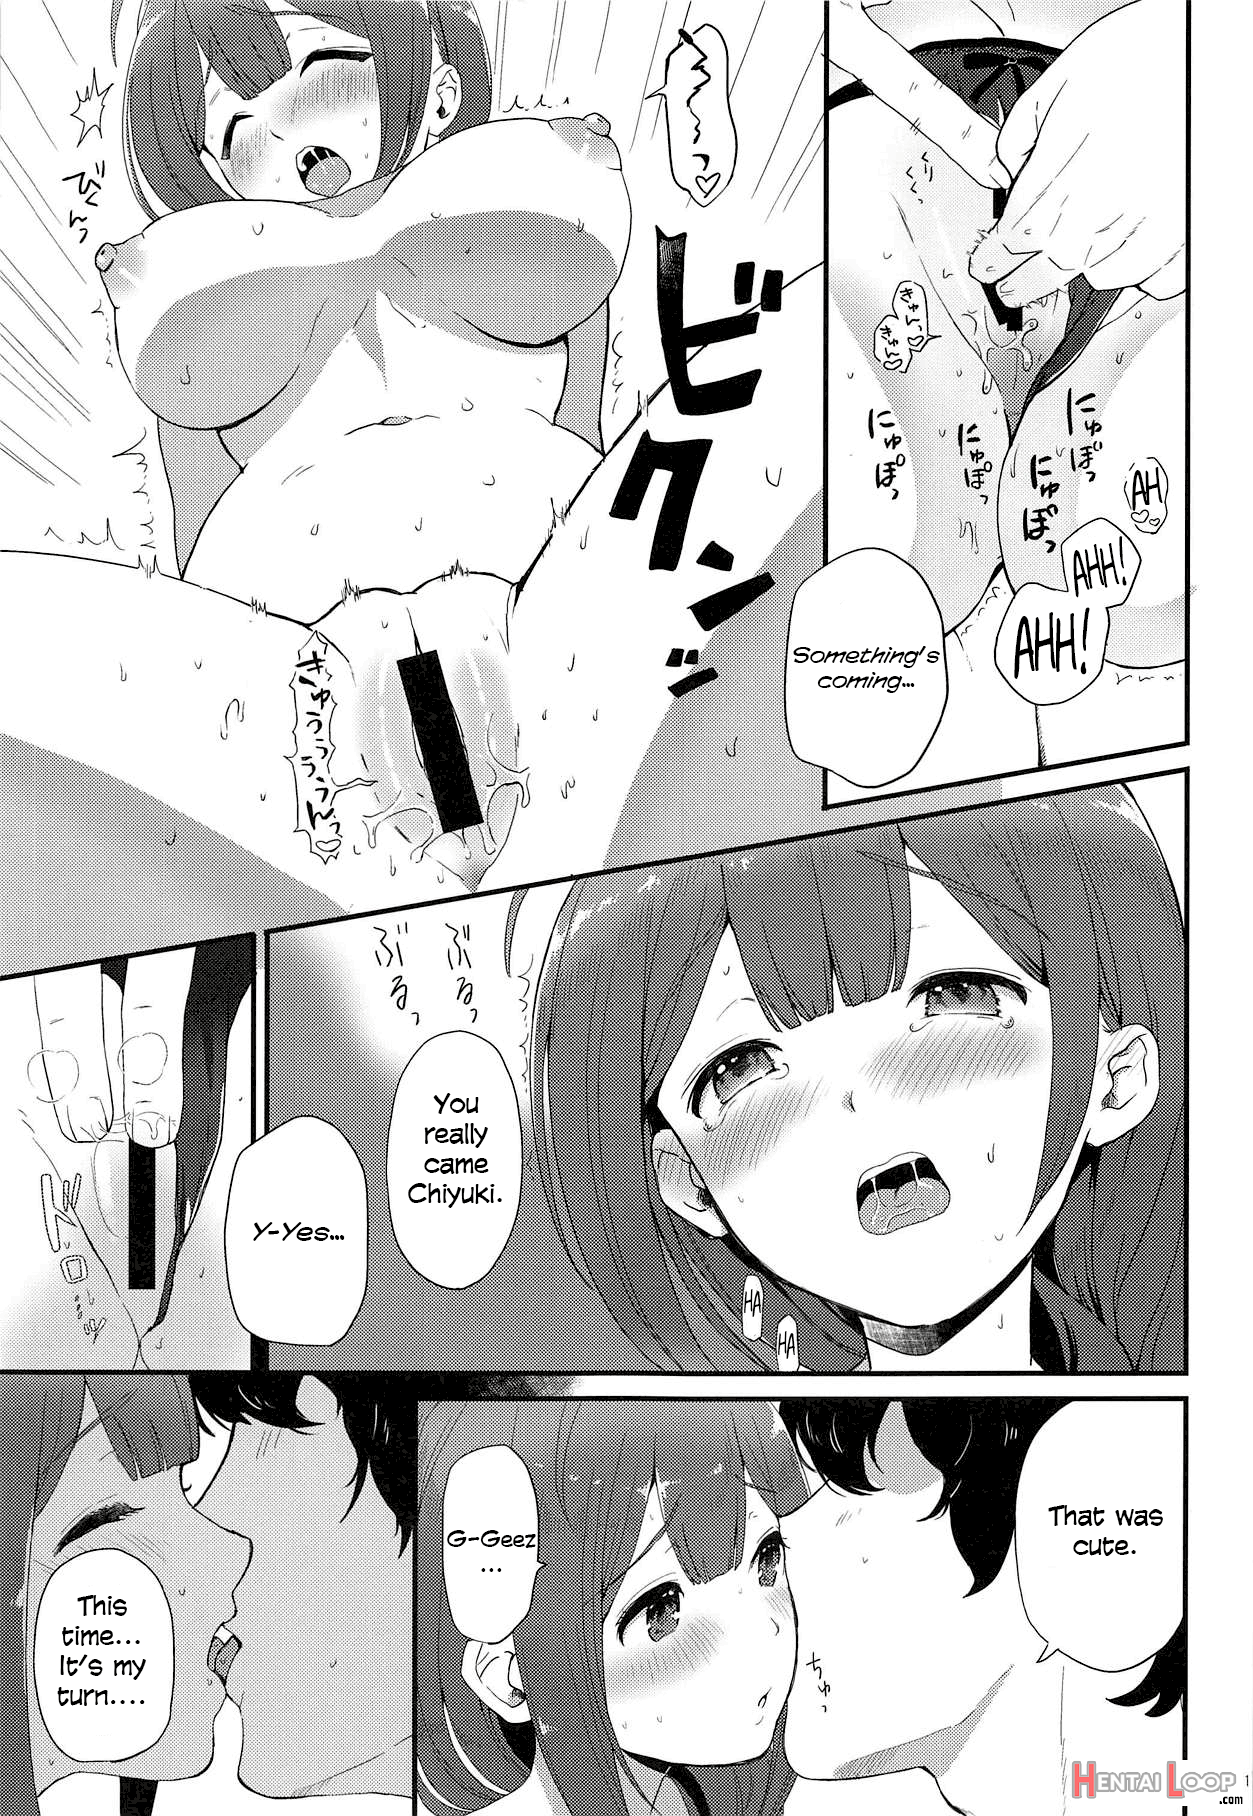 Ippai Chiyuki page 9